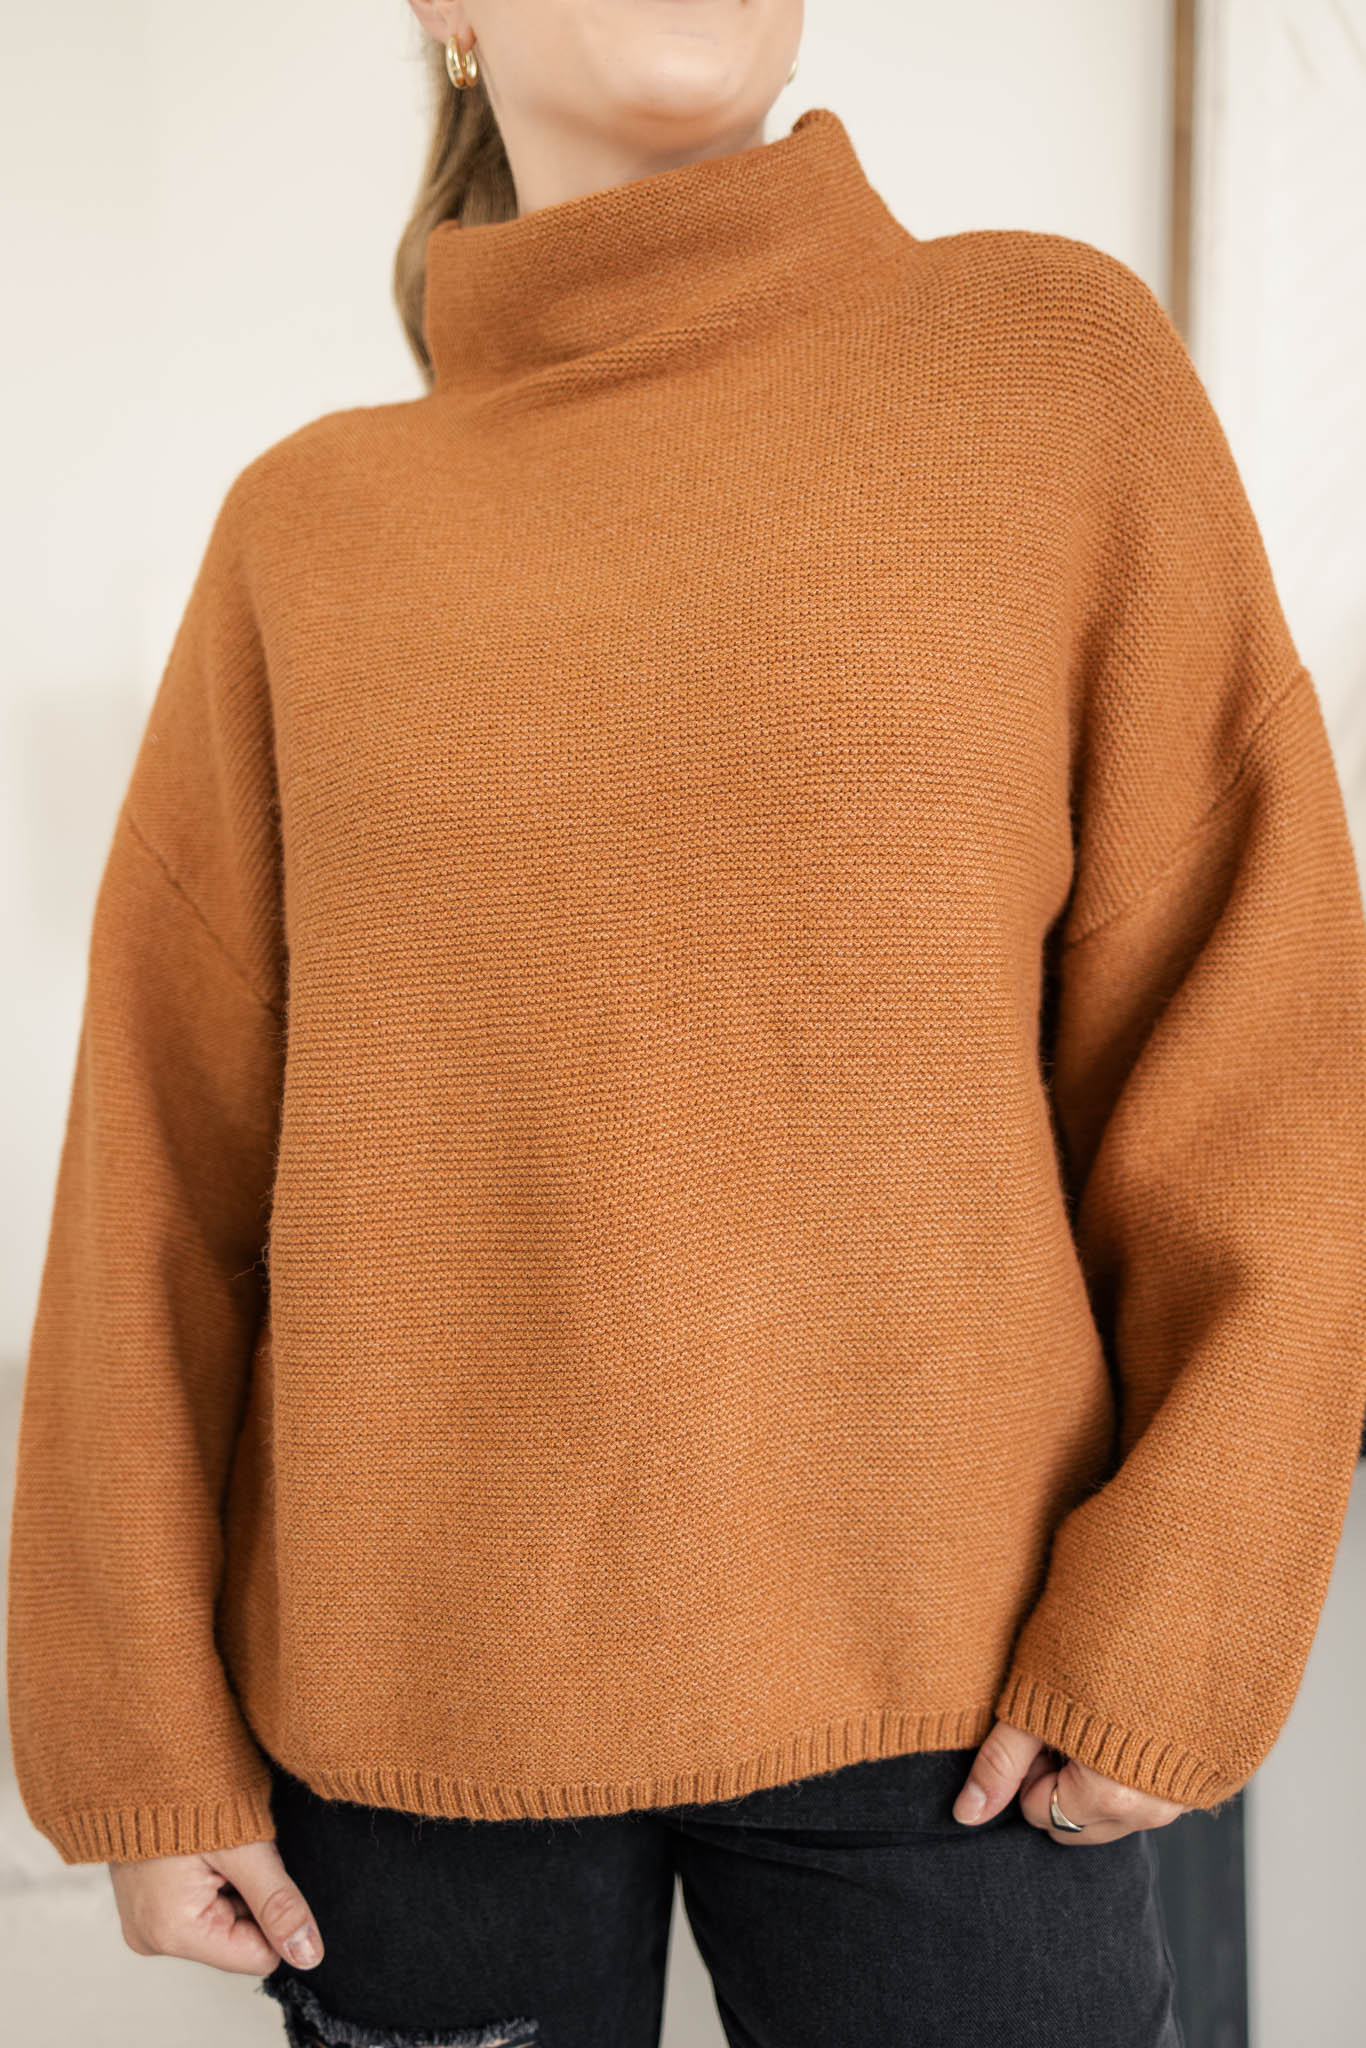 Vermont Sweater